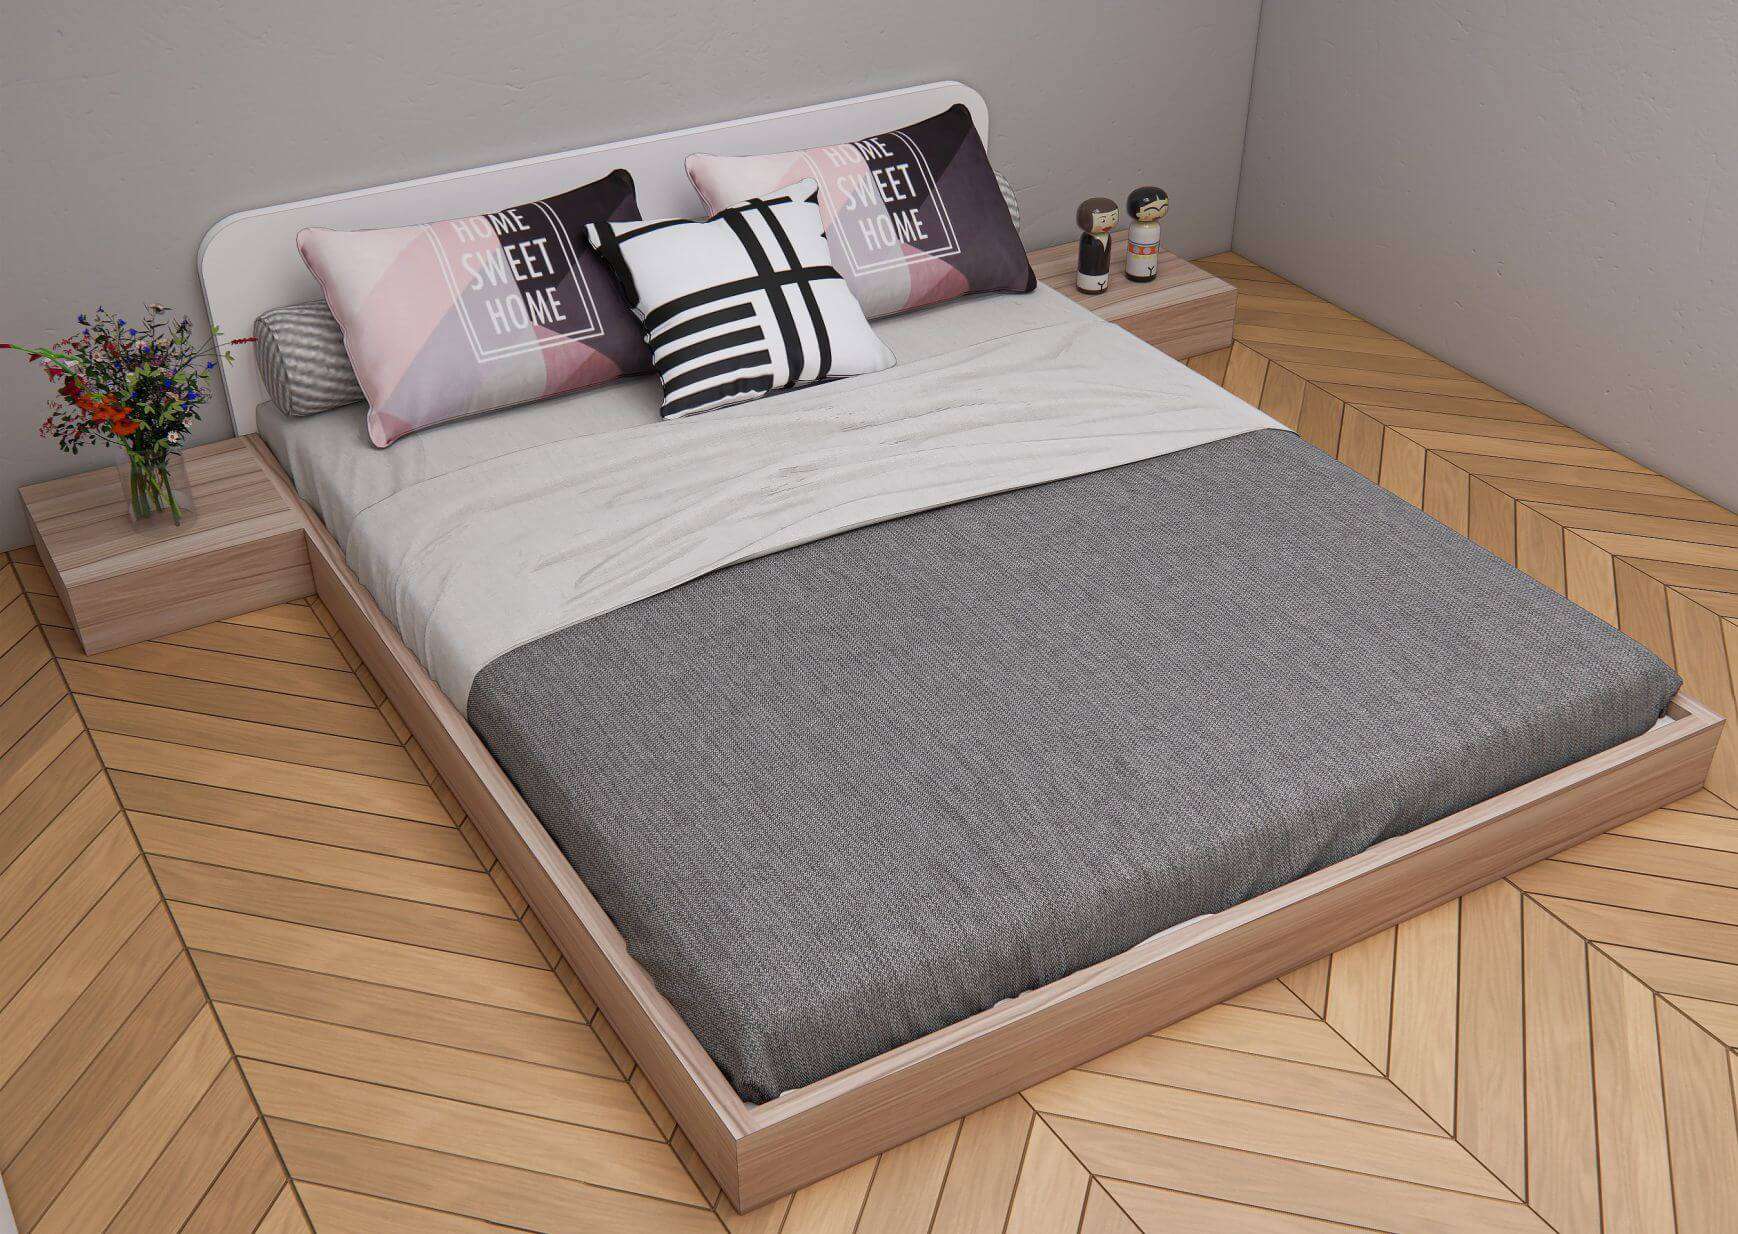 Giường bệt được làm từ gỗ xoan đào